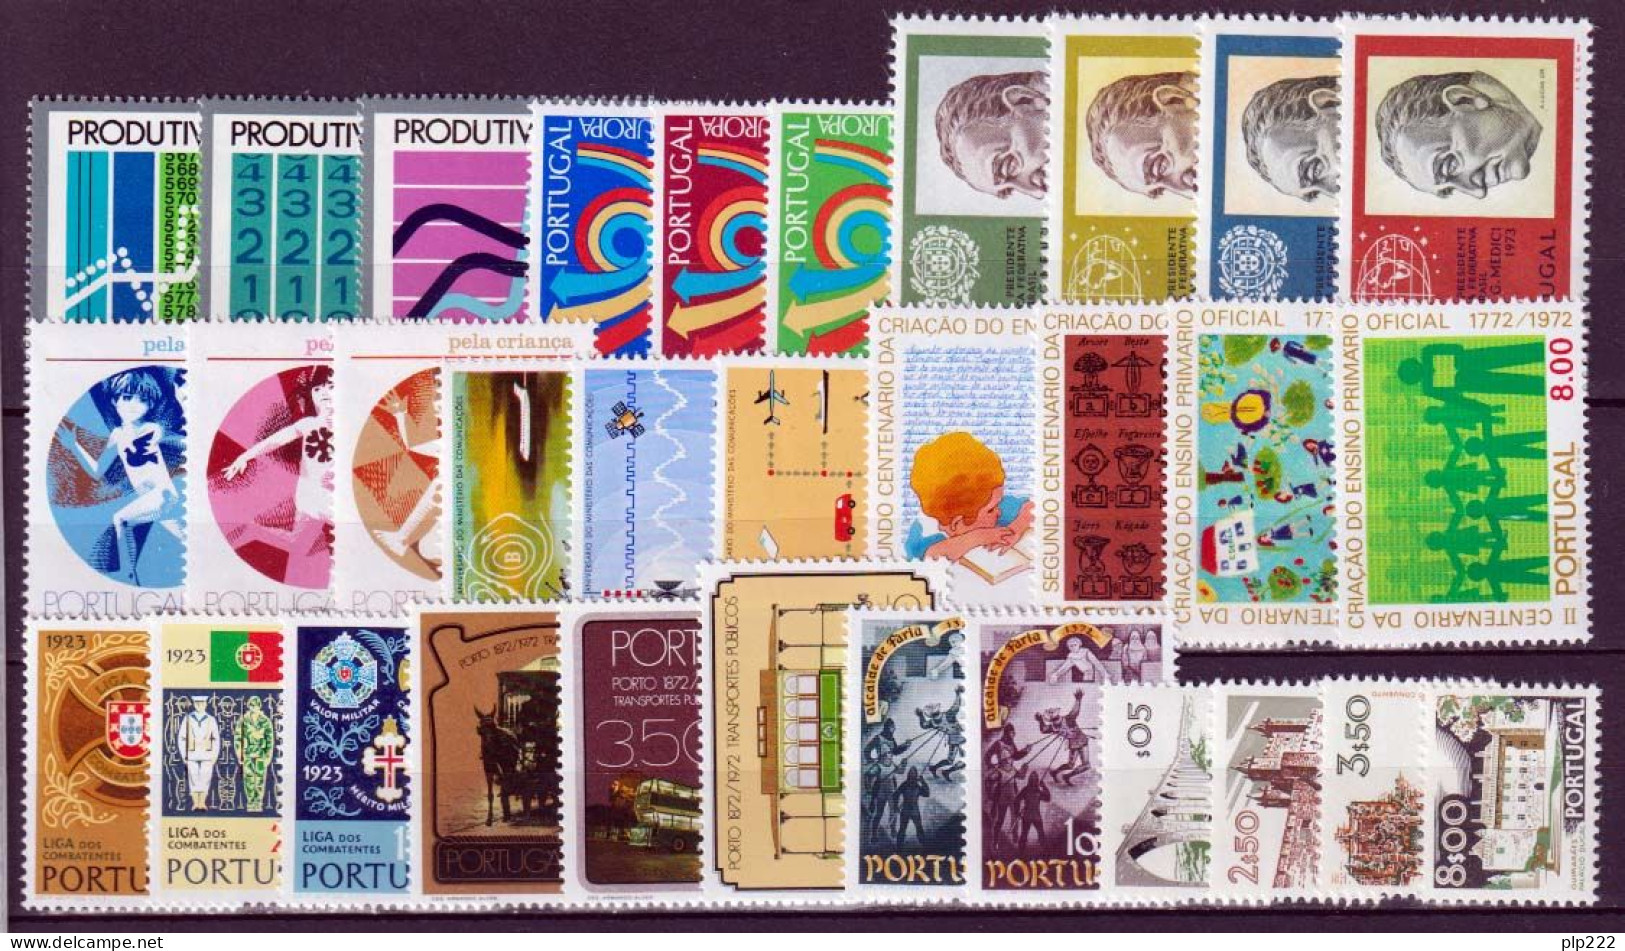 Portogallo 1973 Annata Completa / Complete Year Set **/MNH VF - Años Completos